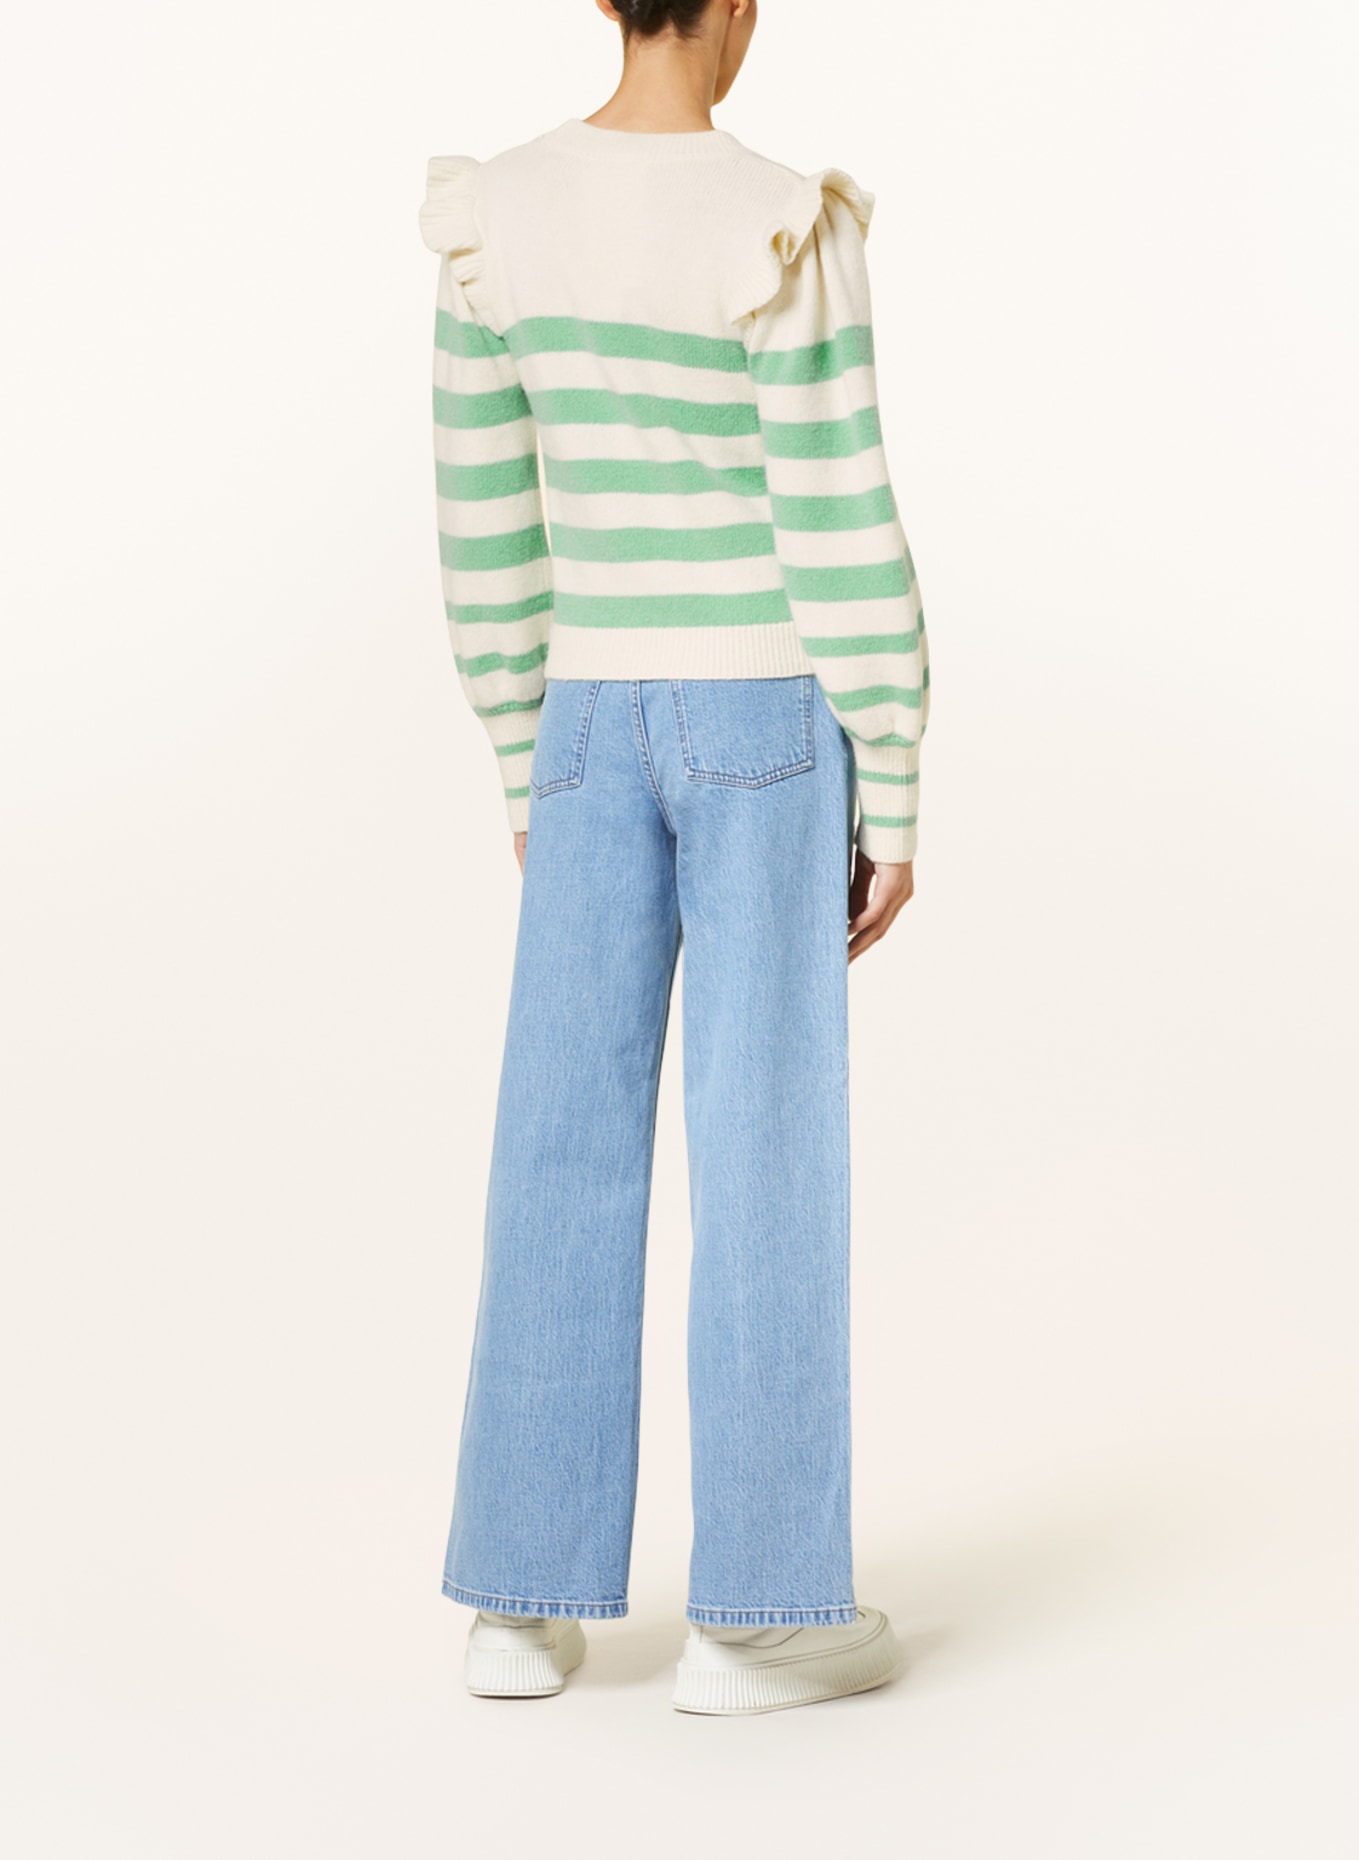 BAUM UND PFERDGARTEN Sweater CAMRYN with frills, Color: ECRU/ LIGHT GREEN (Image 3)